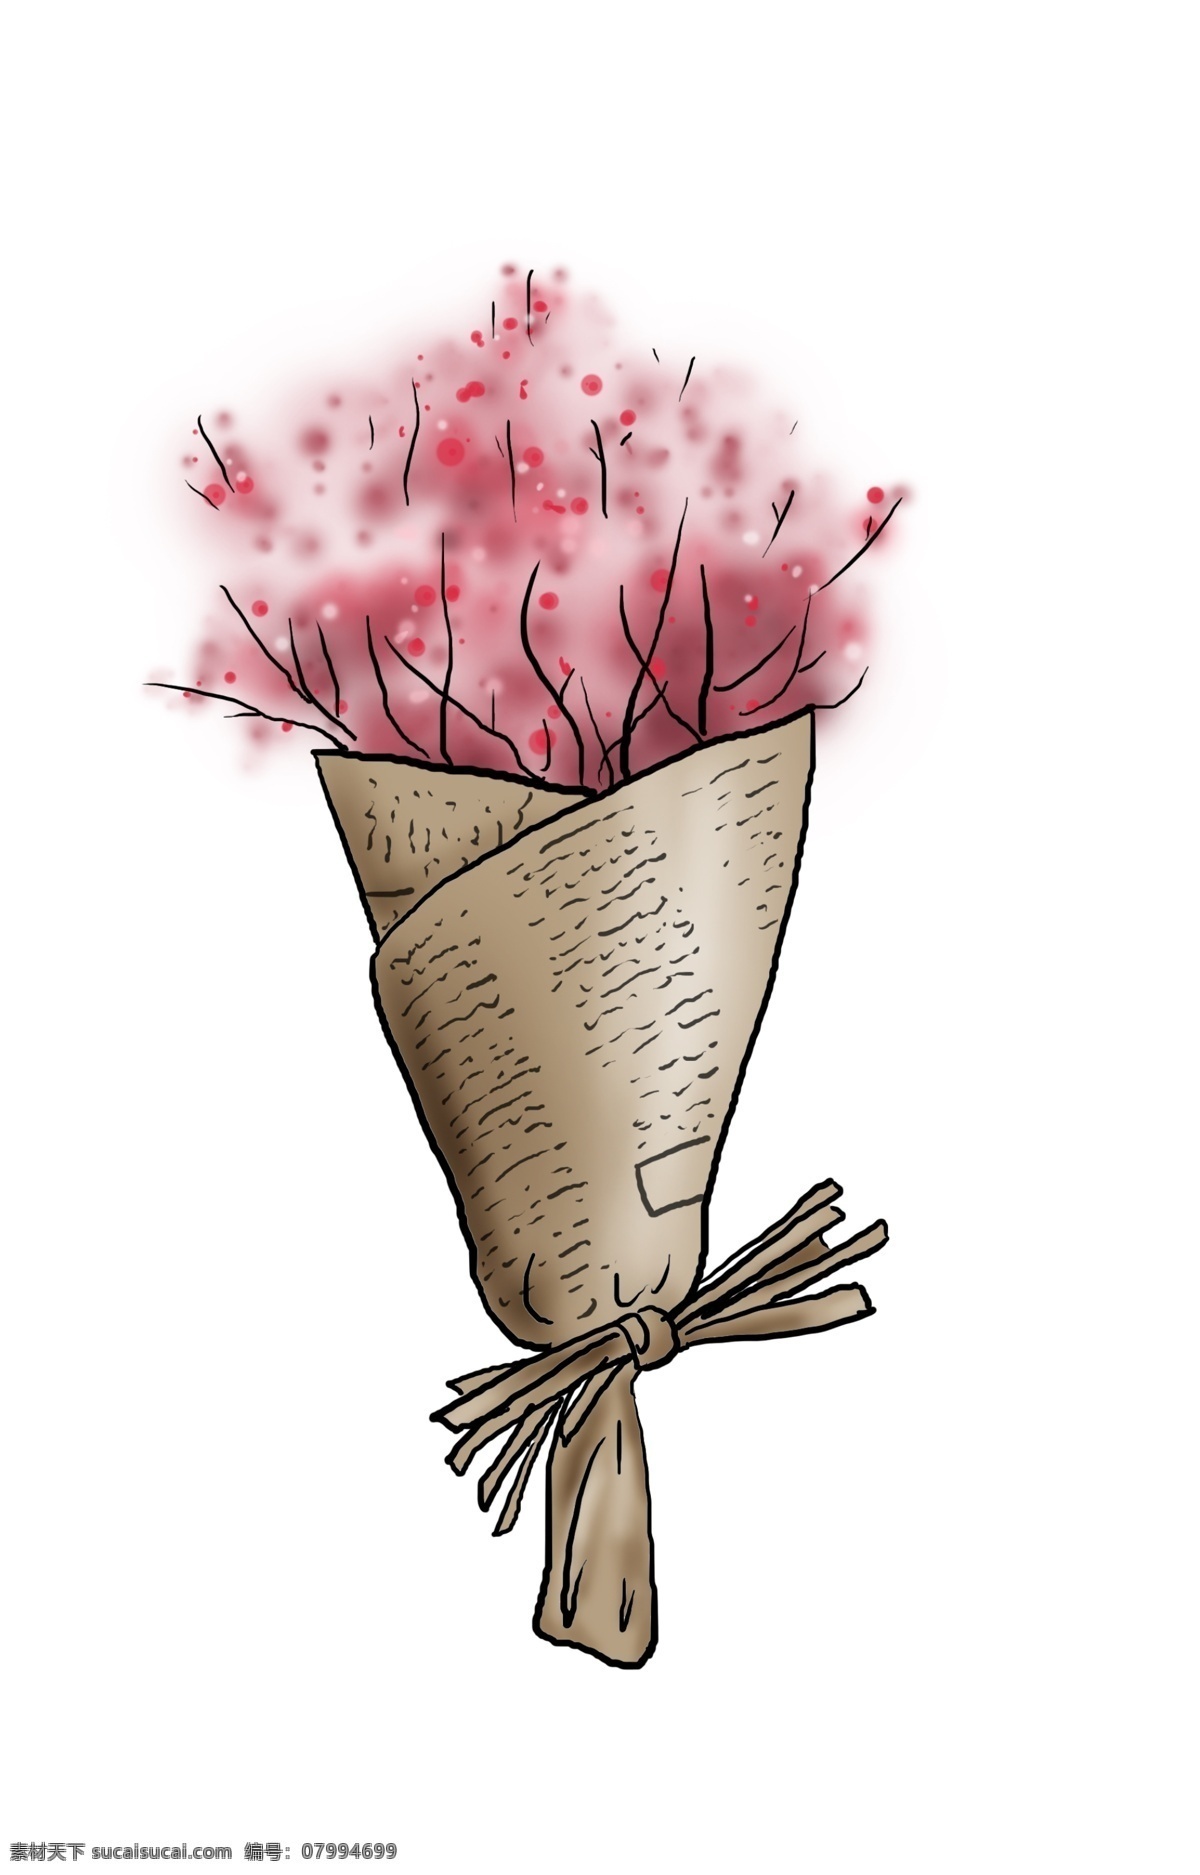 手绘 红色 清新 小 花朵 水墨 彩绘 插画 绿色 自然 礼物 植物 种植 春天 女生 培育 花盆 装饰 韩风 花瓶